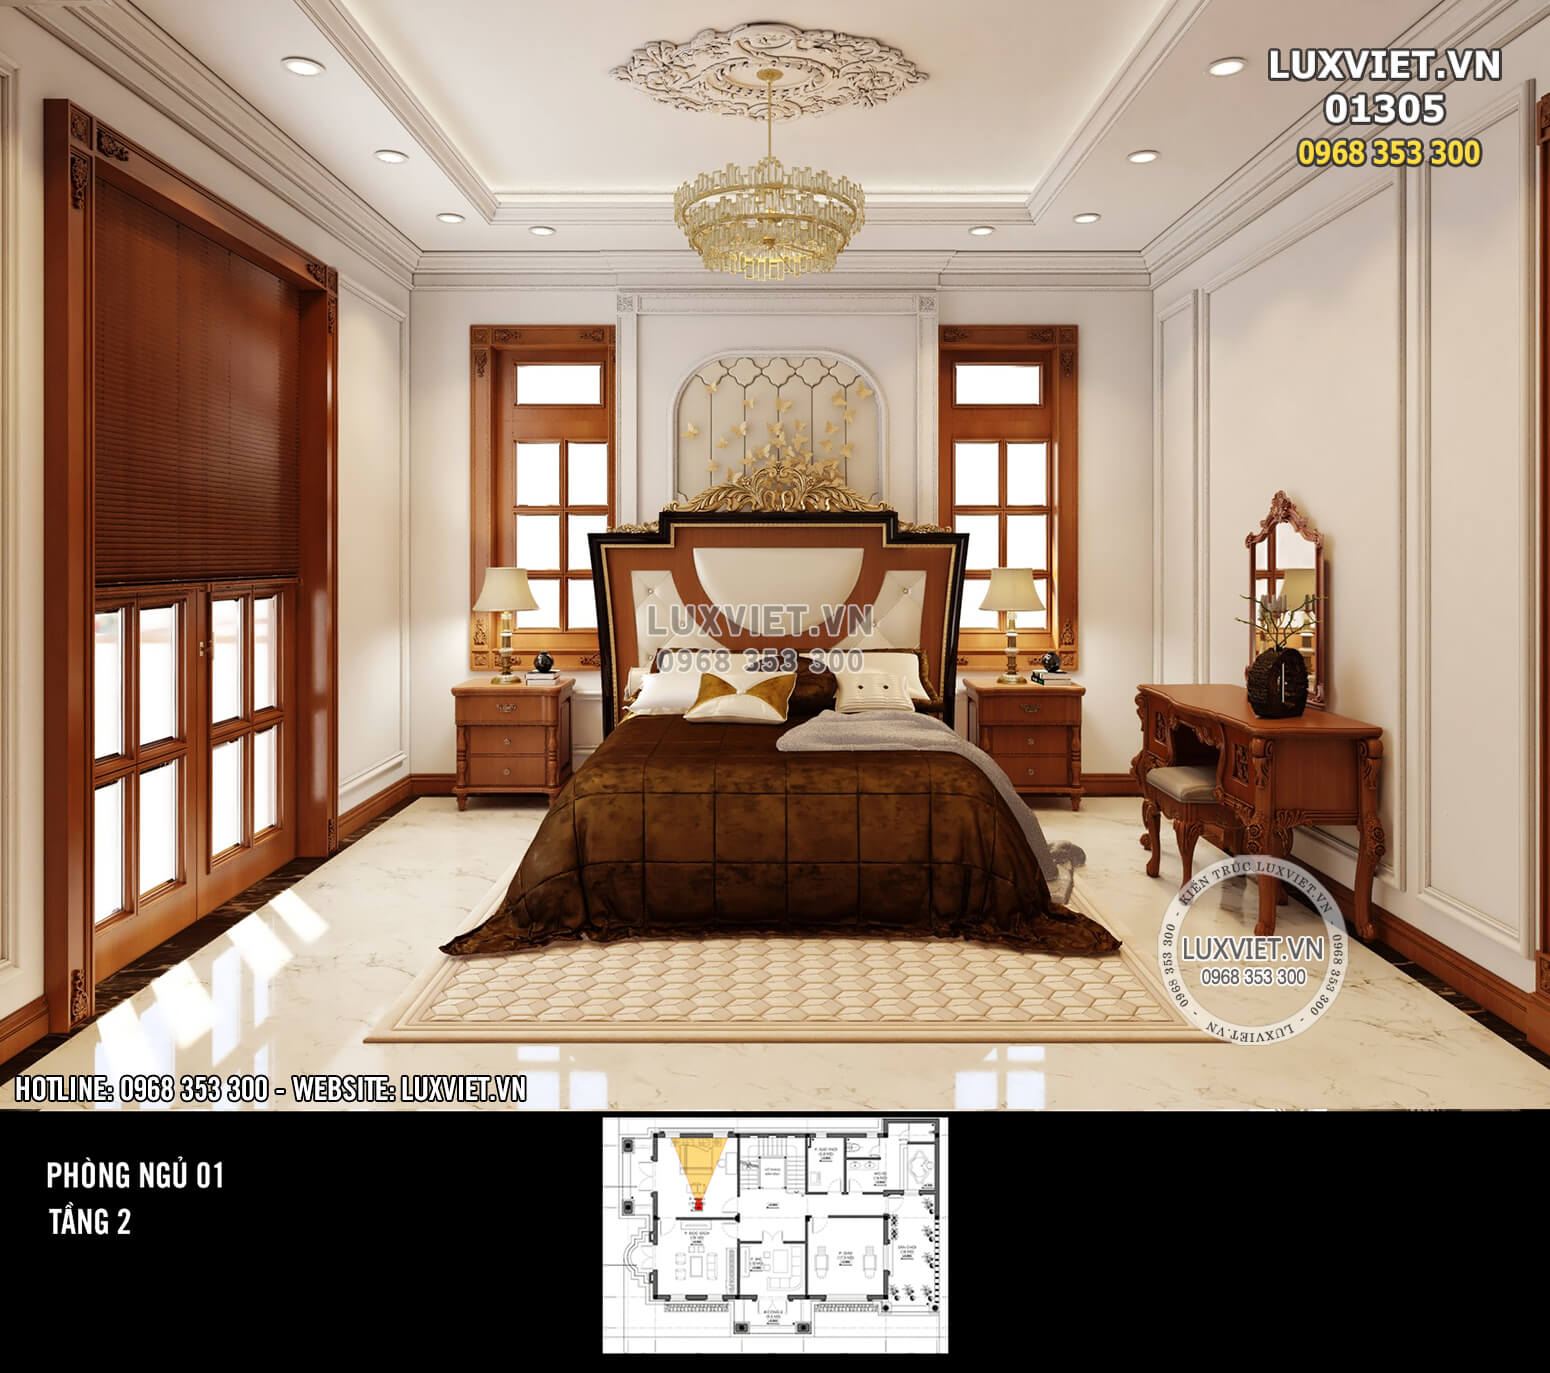 Hình ảnh: Phòng ngủ sang trọng và ấm cúng mang phong cách tân cổ điển đẳng cấp - LV 01305